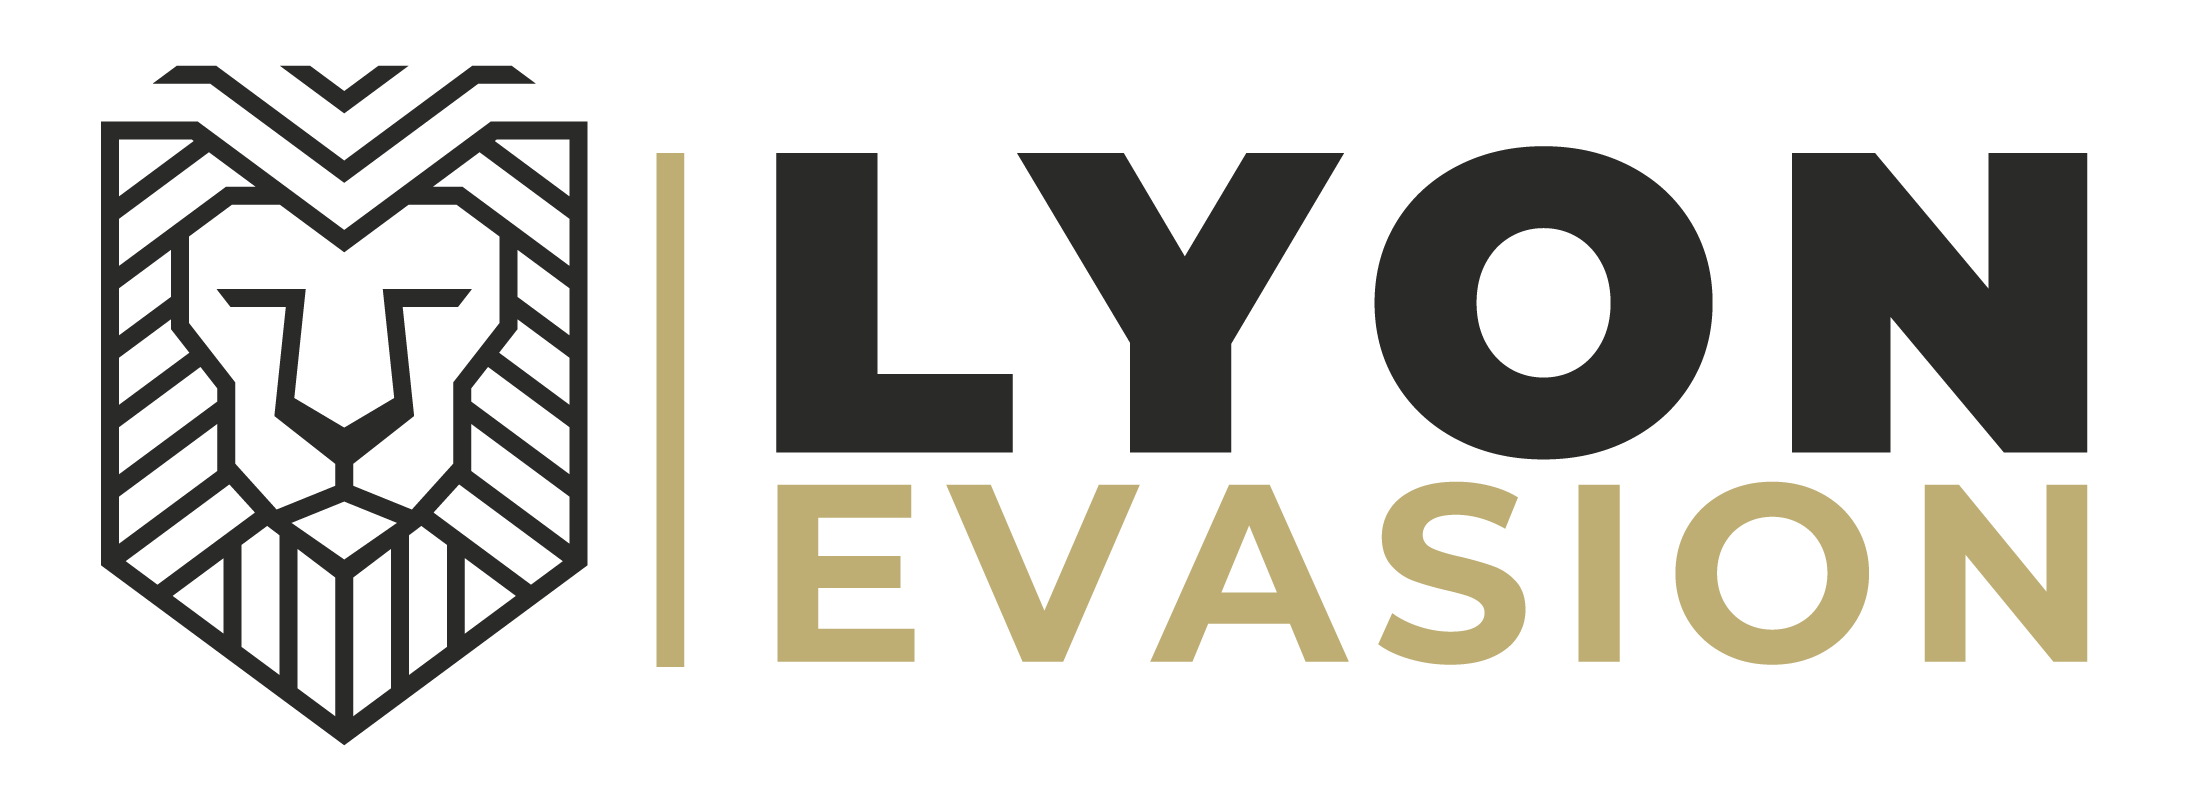 logo-lyon-evasion